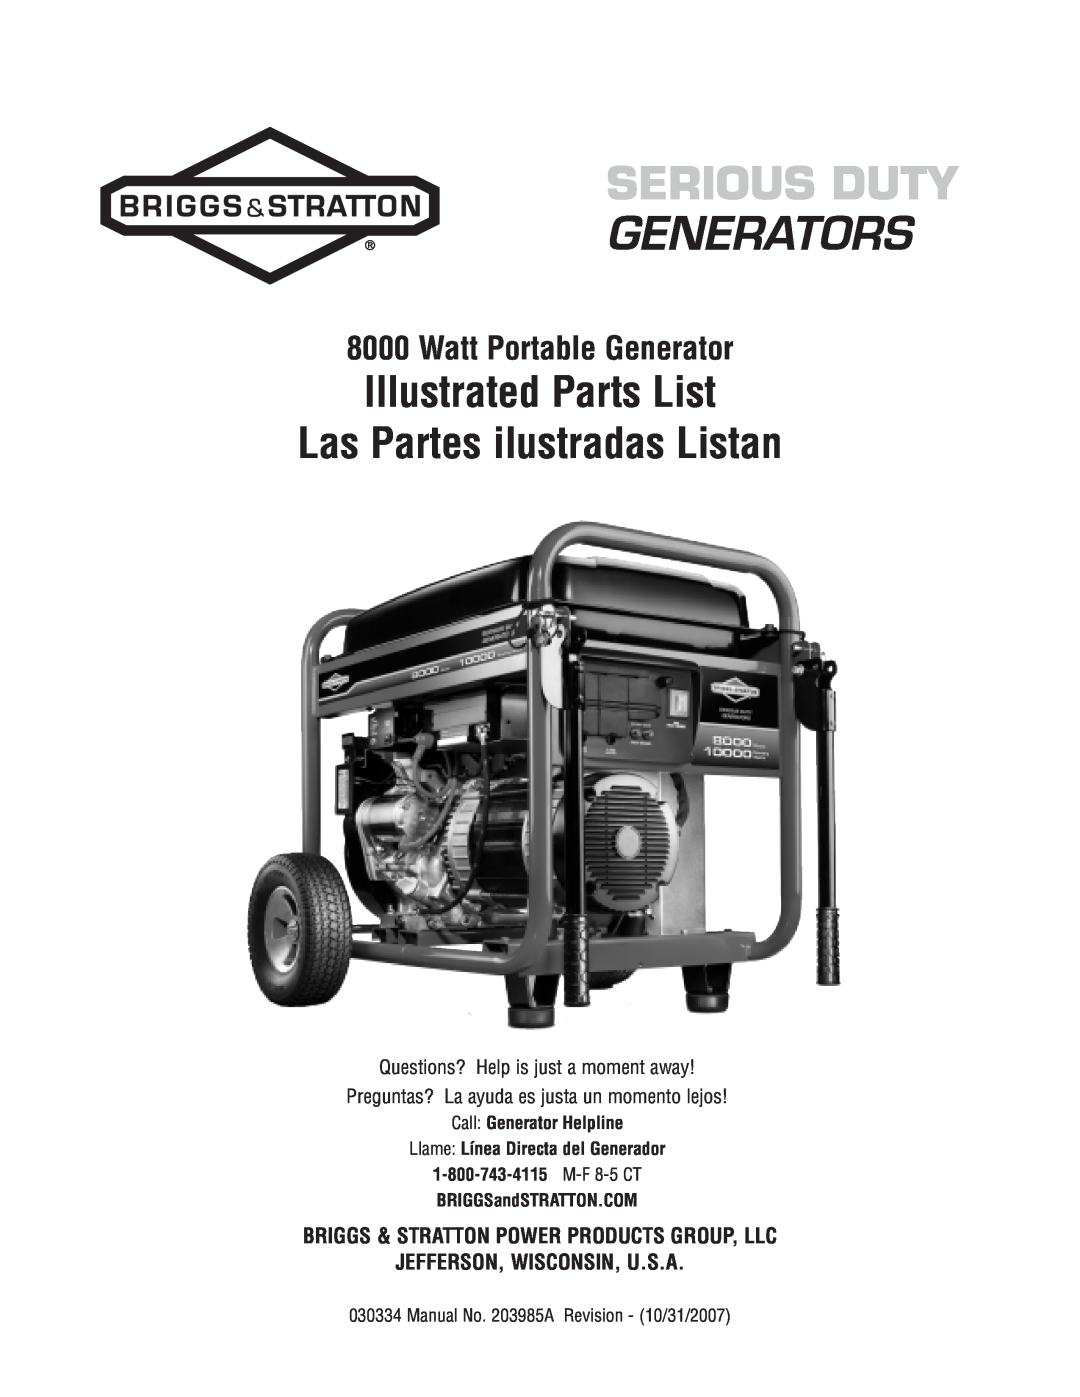 Briggs & Stratton 30334 manual Watt Portable Generator, Call: Generator Helpline, Llame Línea Directa del Generador 